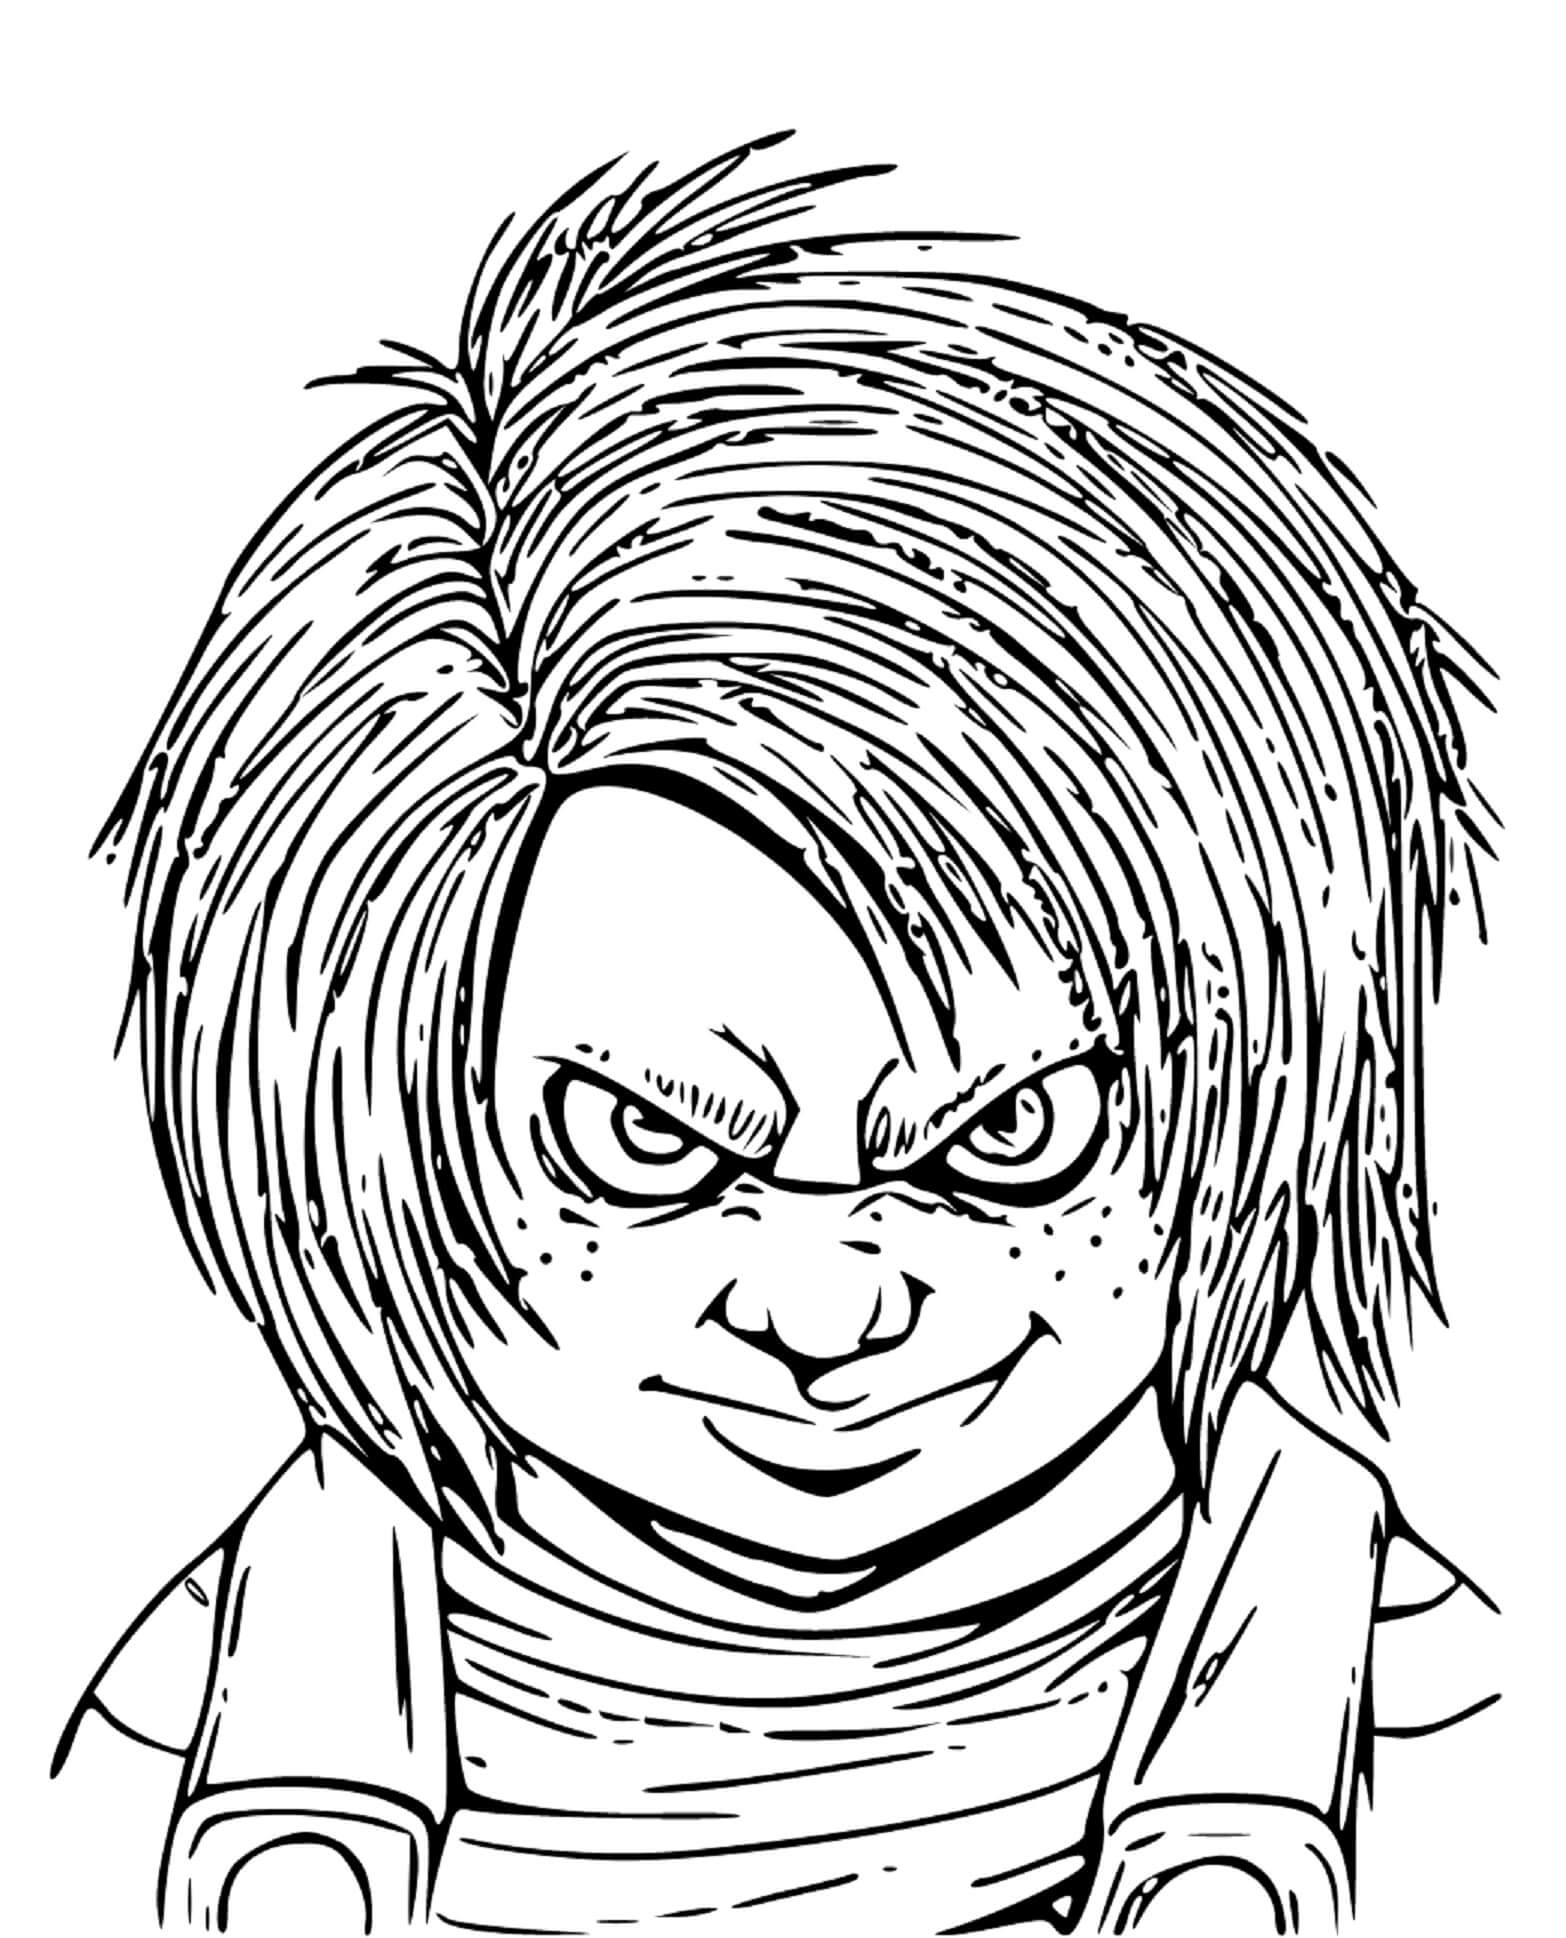 Retrato Engraçado De Chucky para colorir